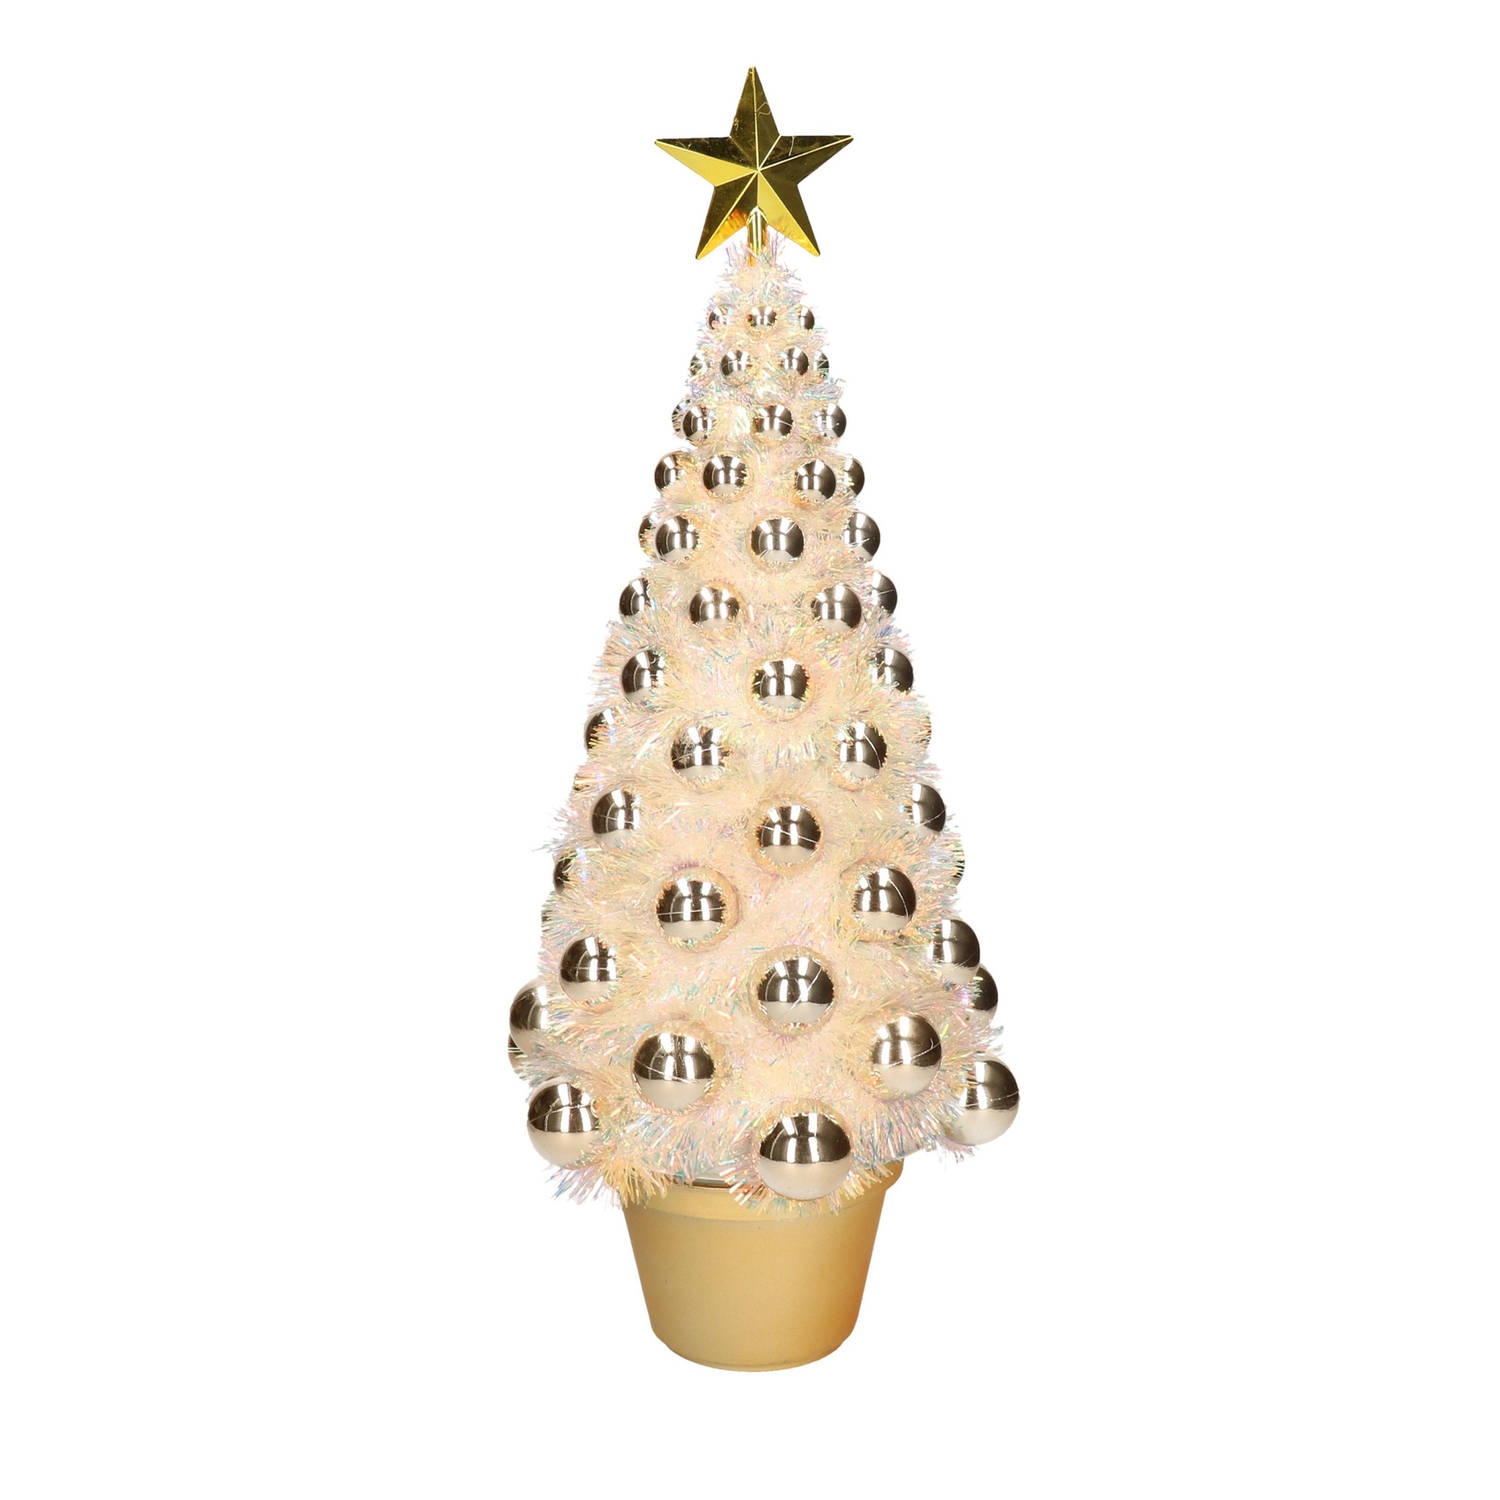 Bevestigen aan Conclusie Vergevingsgezind Complete mini kunst kerstboom / kunstboom goud met lichtjes 50 cm -  Kunstkerstboom | Blokker